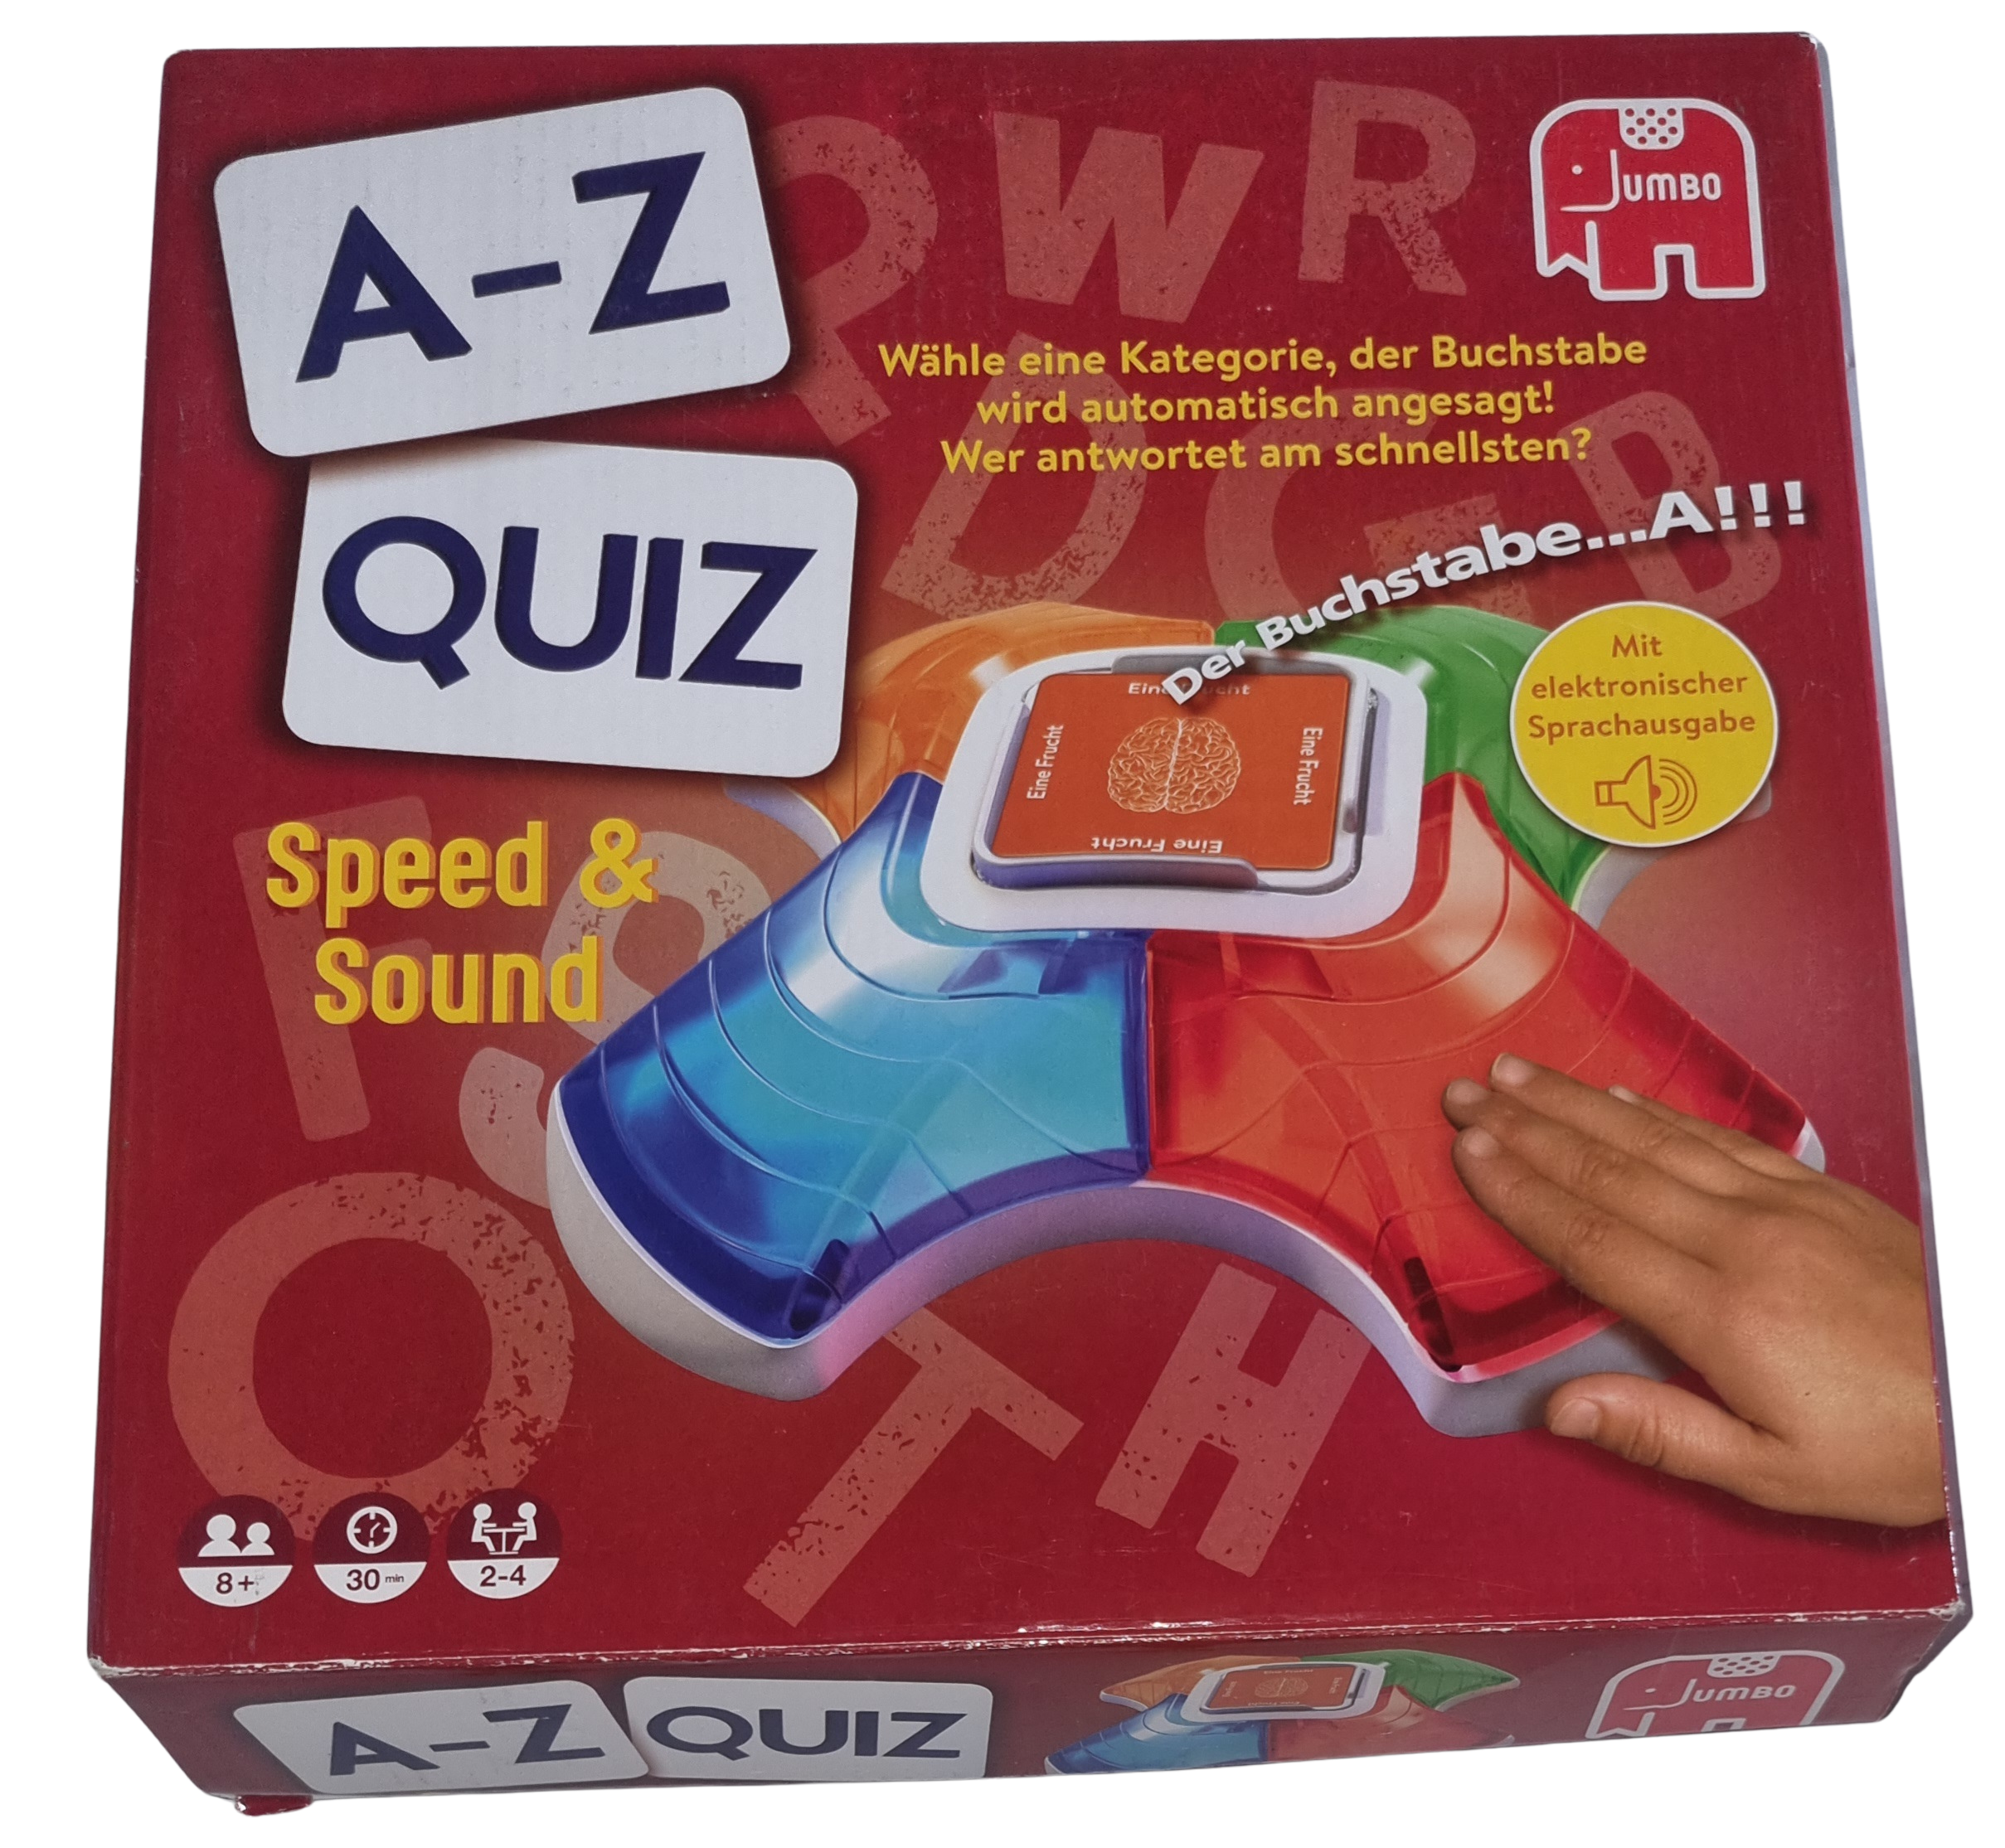 Jumbo A-Z Quiz mit Speed & Sound